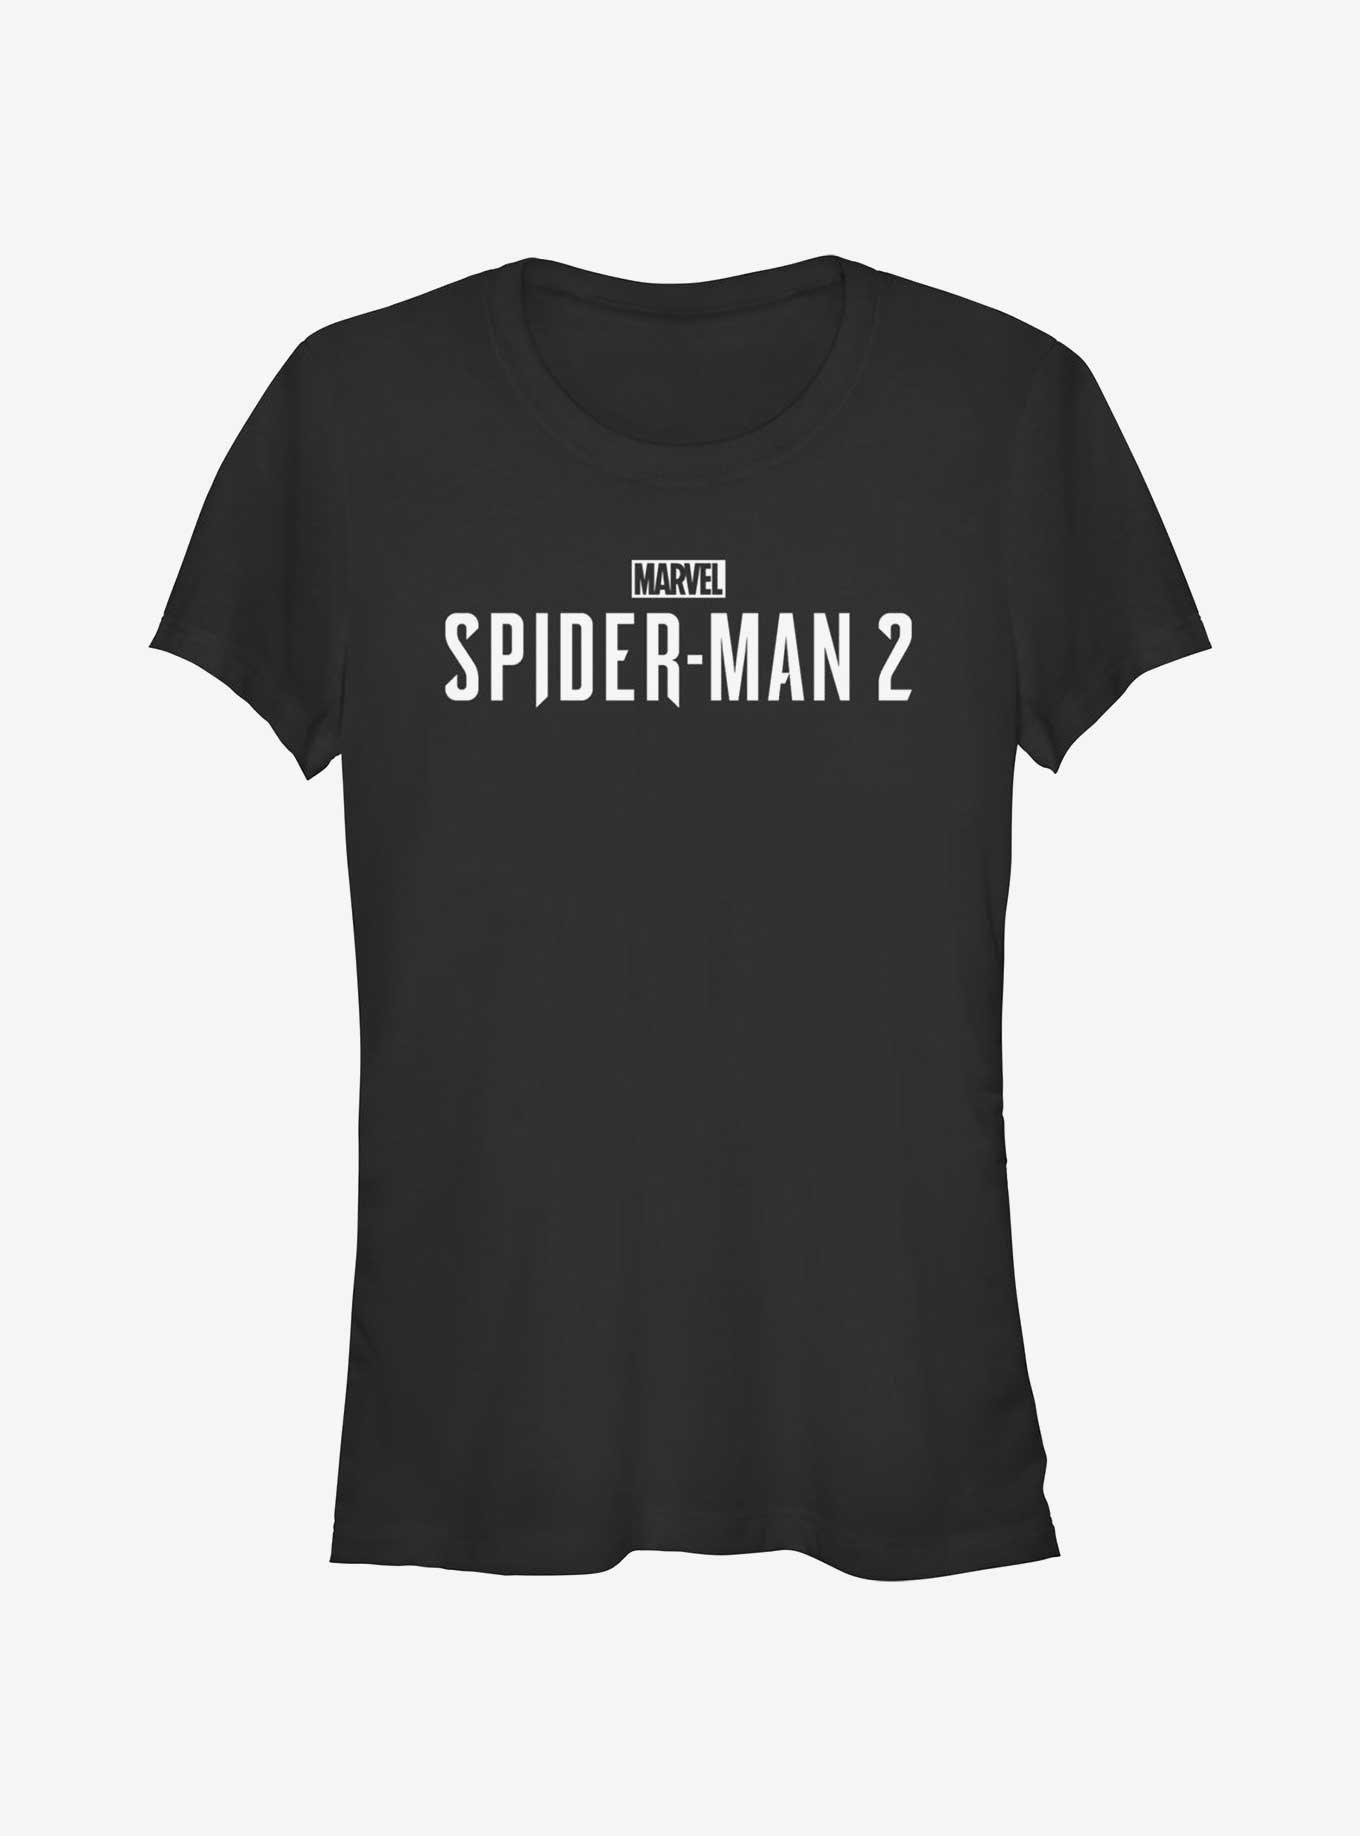 Marvel Spider-Man 2 Game White Logo Girls T-Shirt, BLACK, hi-res